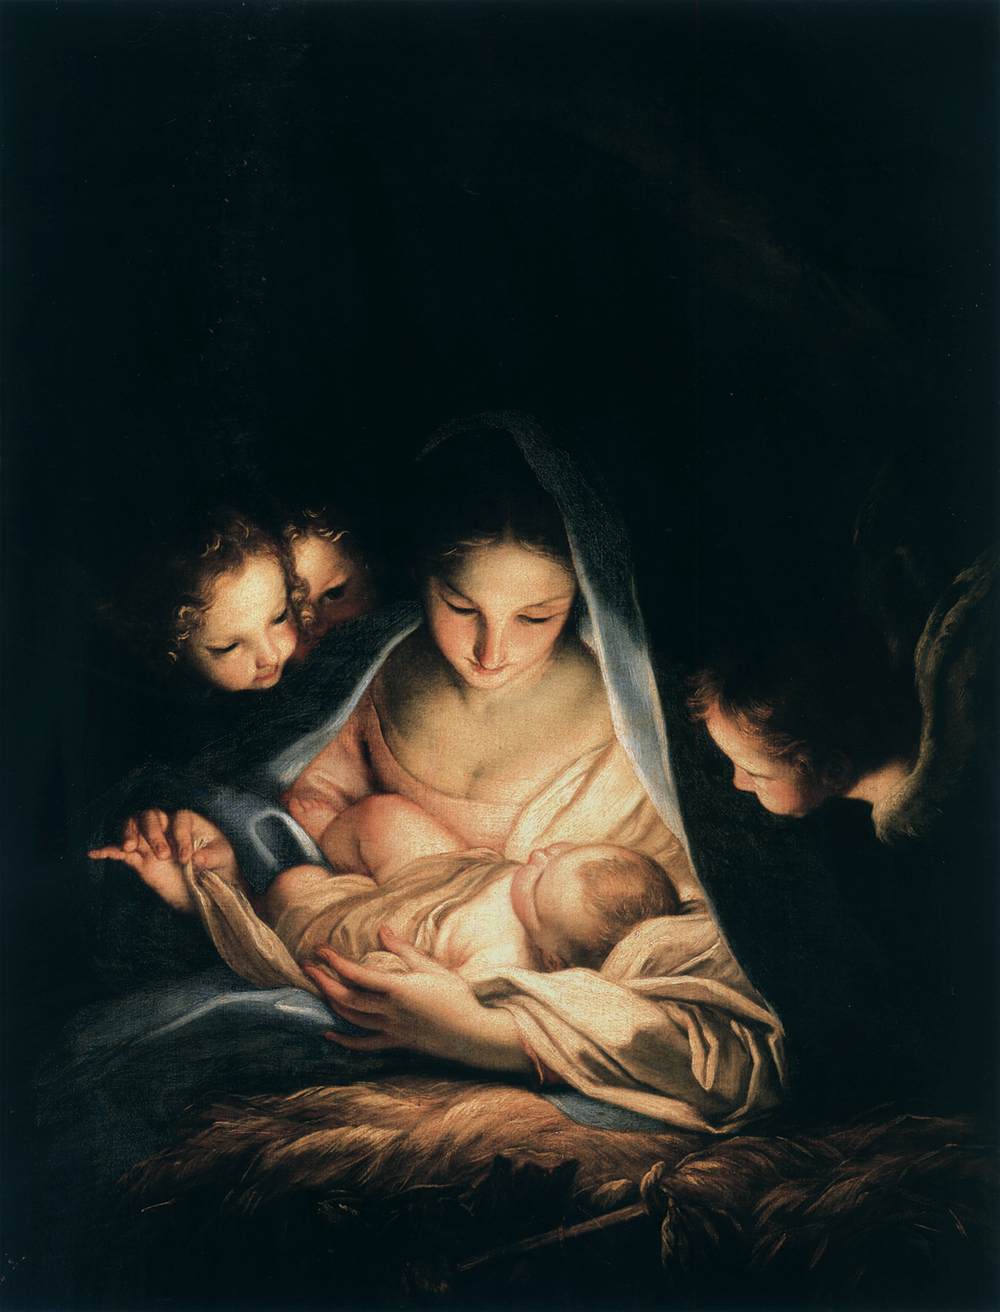 The Holy Night (The Nativity)